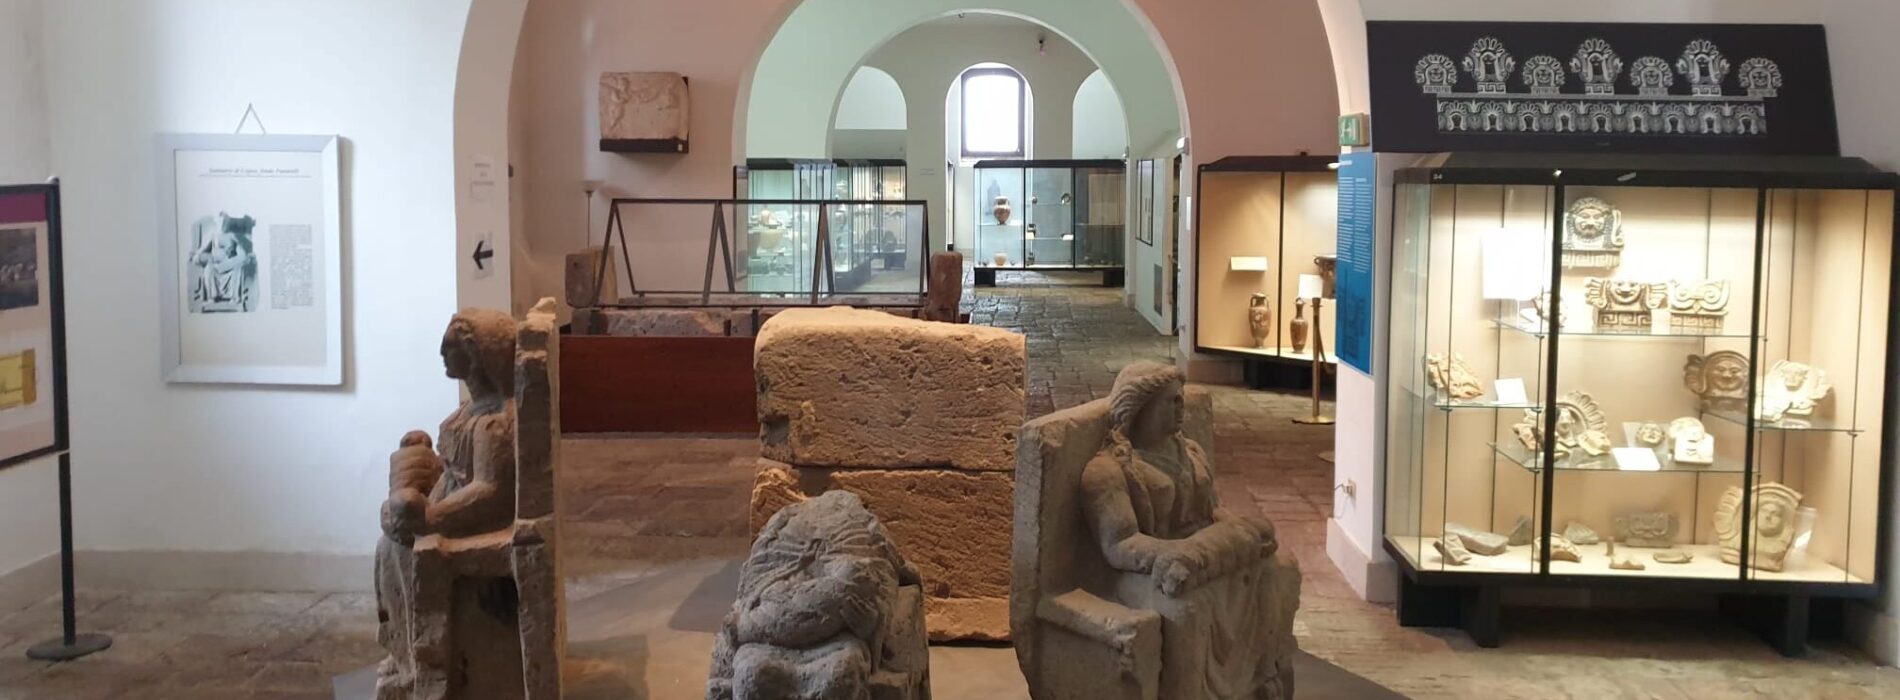 Museo dell’Antica Capua, spazi riallestiti per i visitatori